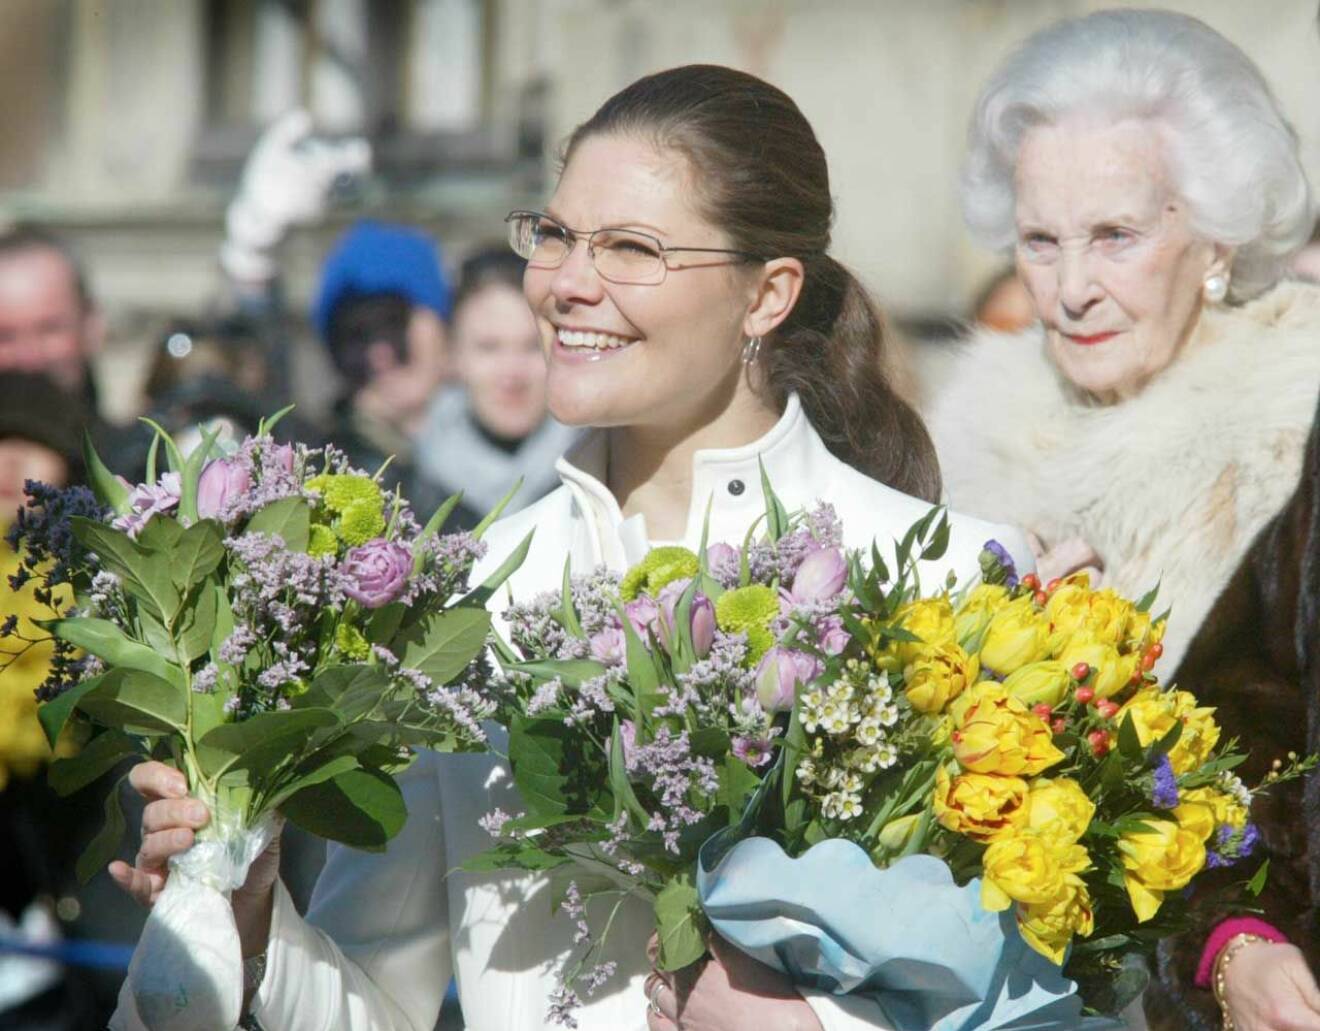 Kronprinsessan Victorias namnsdagsfirande den 12 mars 2004. Prinsessan Lilian syns i bakgrunden.